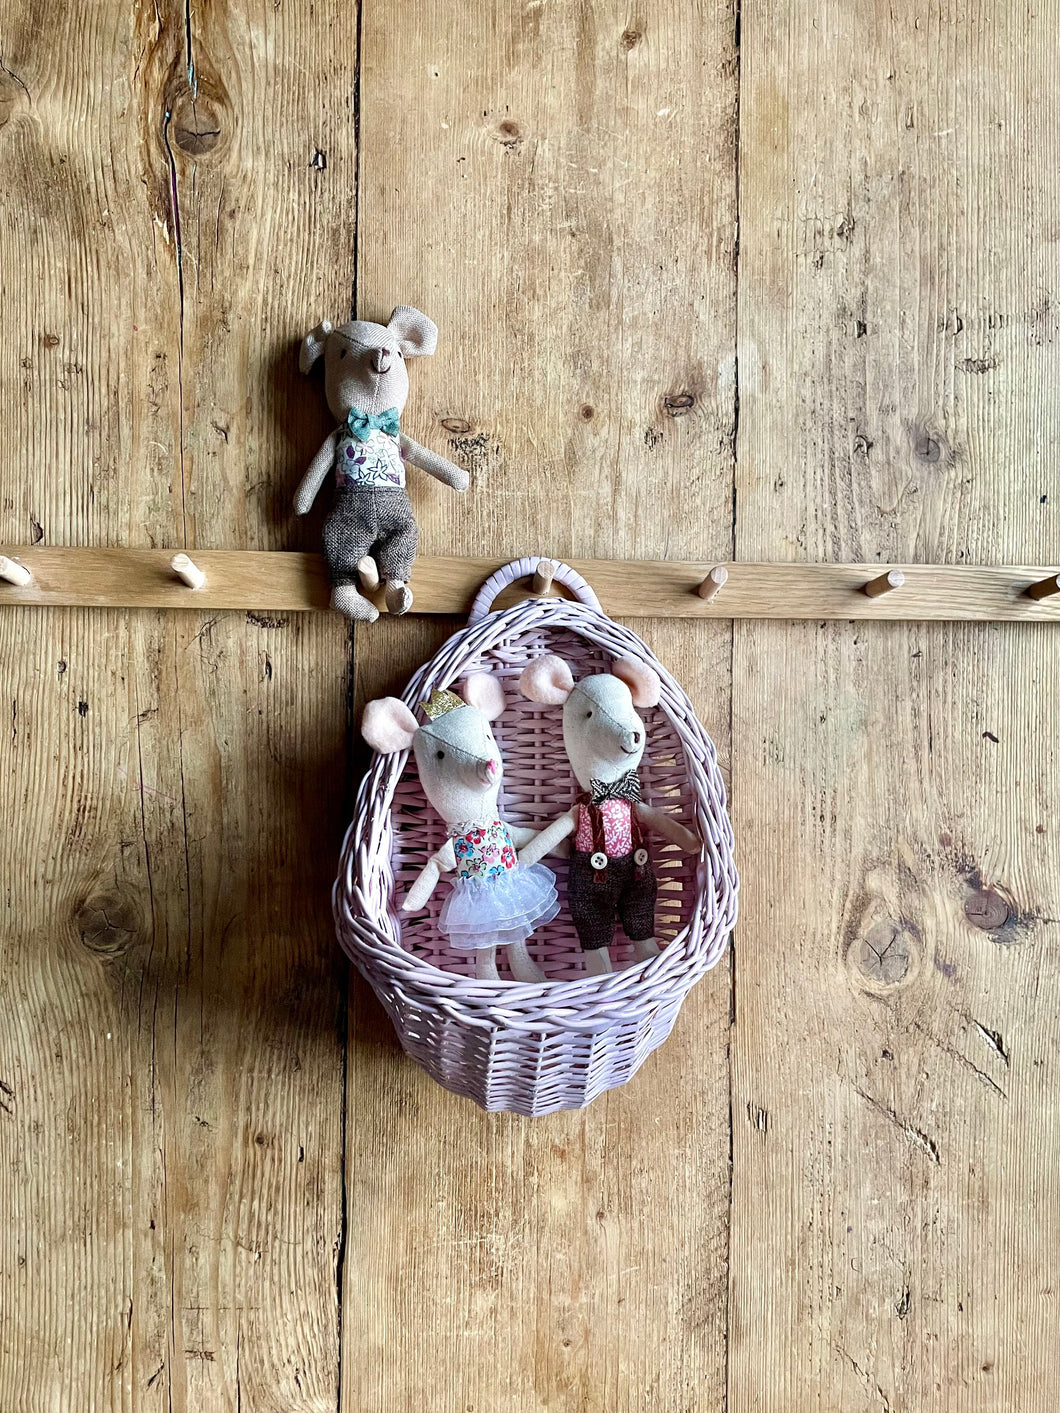 Wicker hanging basket, wicker wall basket, rattan basket, hanging basket, light pink